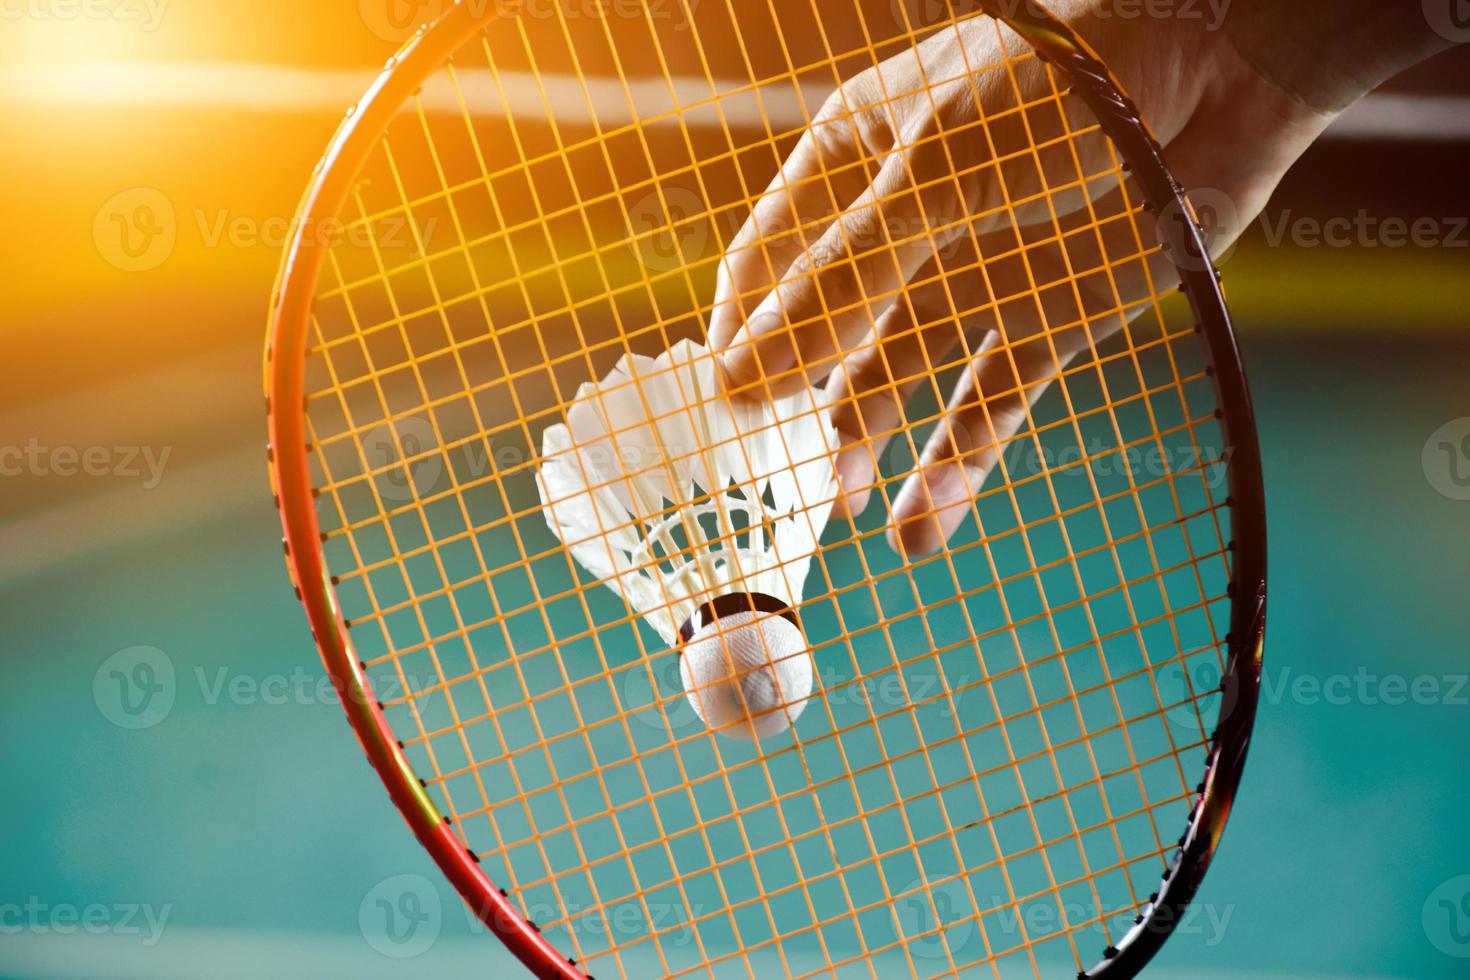 raquete de badminton e peteca branca velha segurando nas mãos do jogador enquanto servia pela rede à frente, desfocar o fundo da quadra de badminton e foco seletivo foto